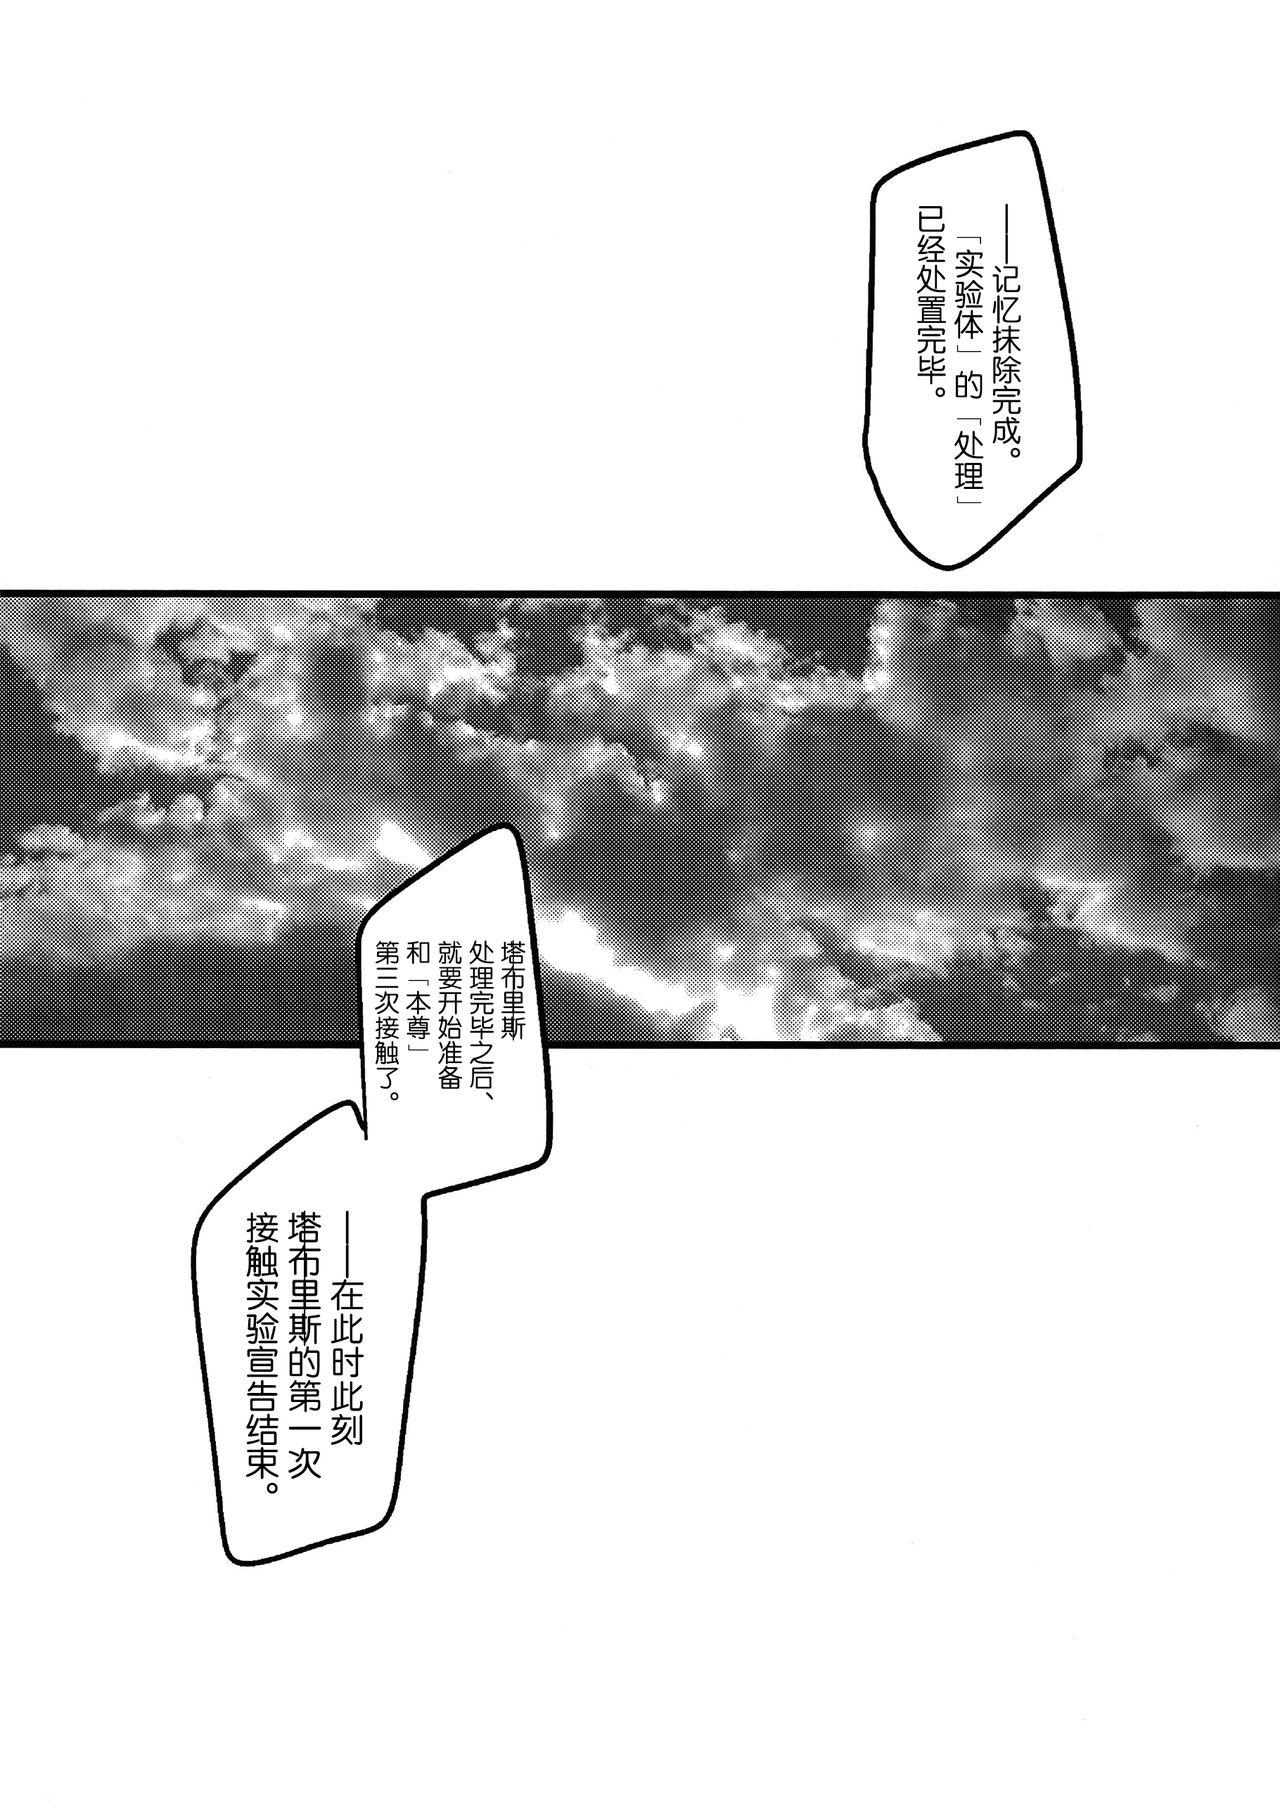 Celeb Ore no Koto o Ikari Shinji da to Omoikomu Saimin ni Kakatta Nagisa Kaworu-kun wa Mechamecha Yasashii - Neon genesis evangelion Thot - Page 11